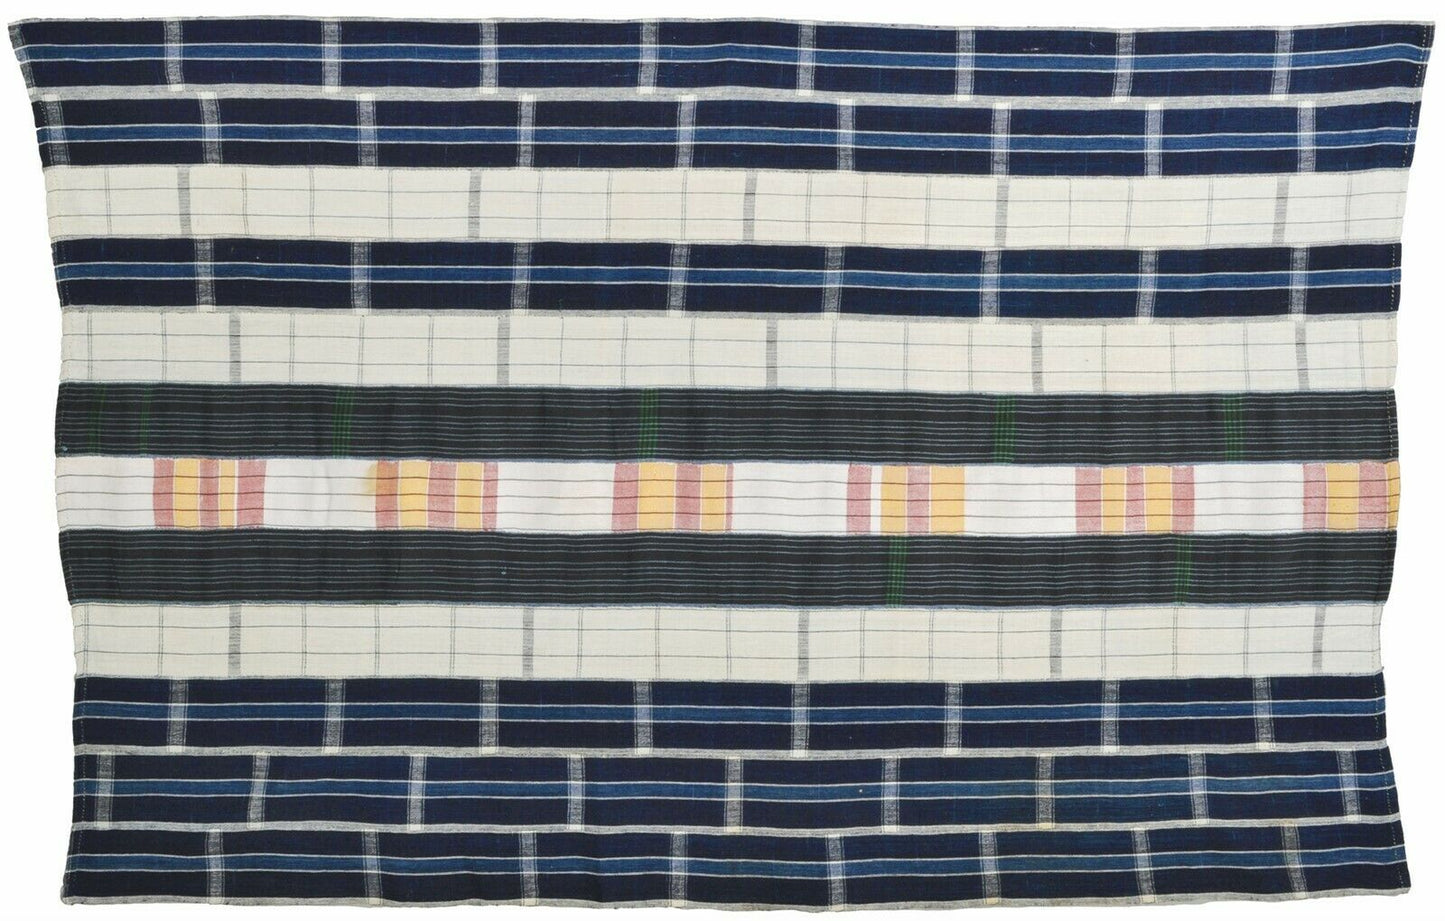 Afrikanische Elfenbeinküste Baule handgewebtes Tuch Vintage Textil Wohnkultur Kunst - Tribalgh